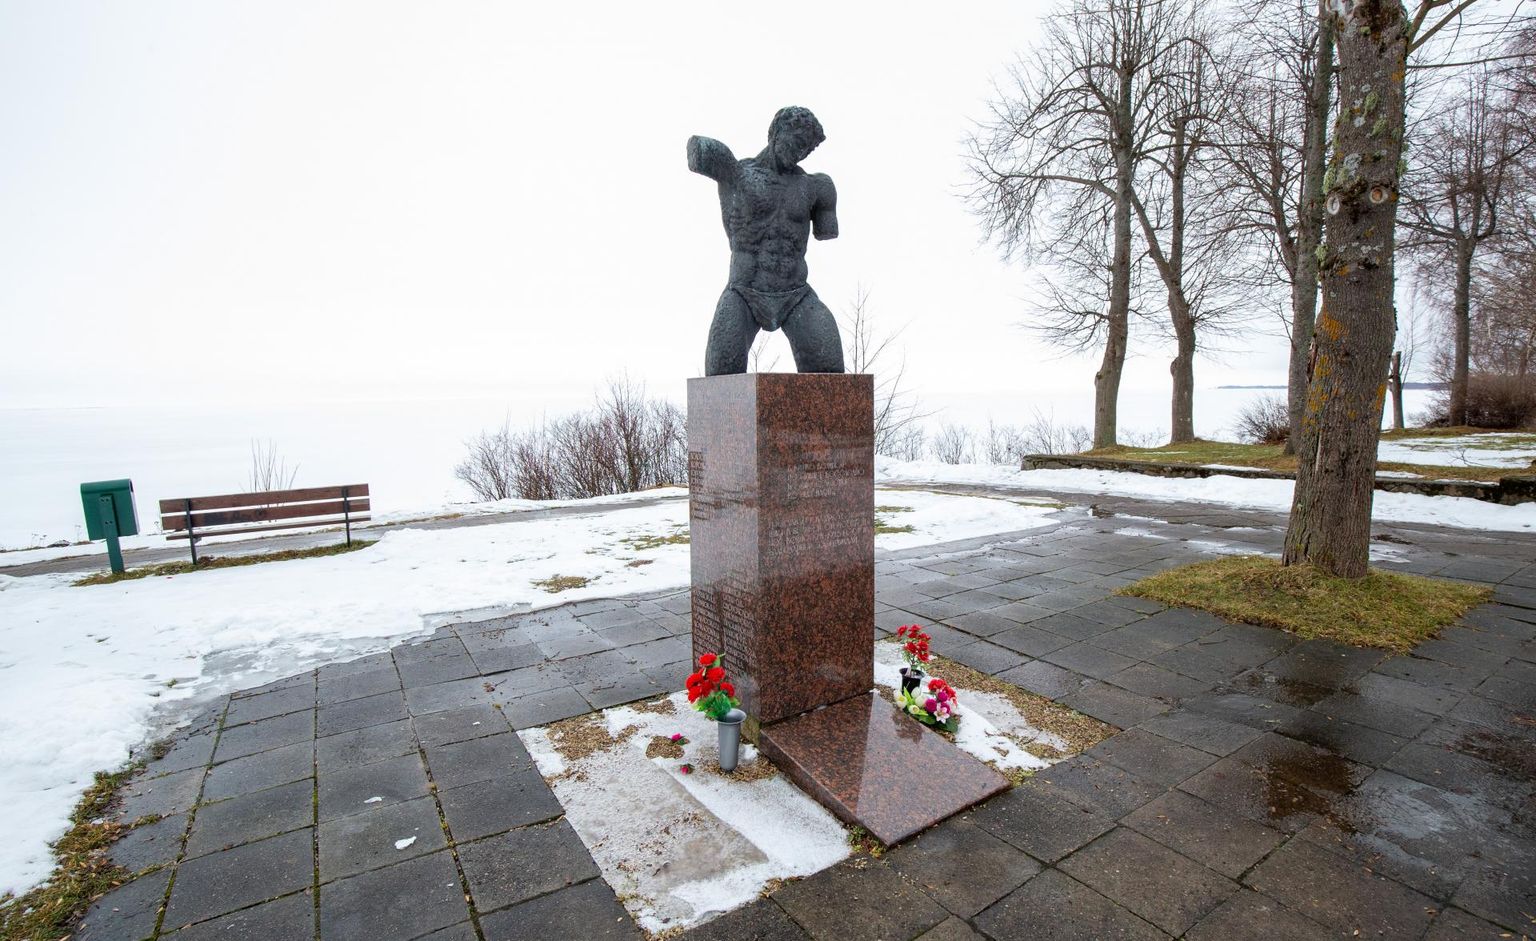 Viimases sõjas aastail 1941–1945 langenud kallastelaste mälestuseks püstitatud monument valmis skulptor Ülo Õuna ja arhitekt Ike Volkovi koostöös.